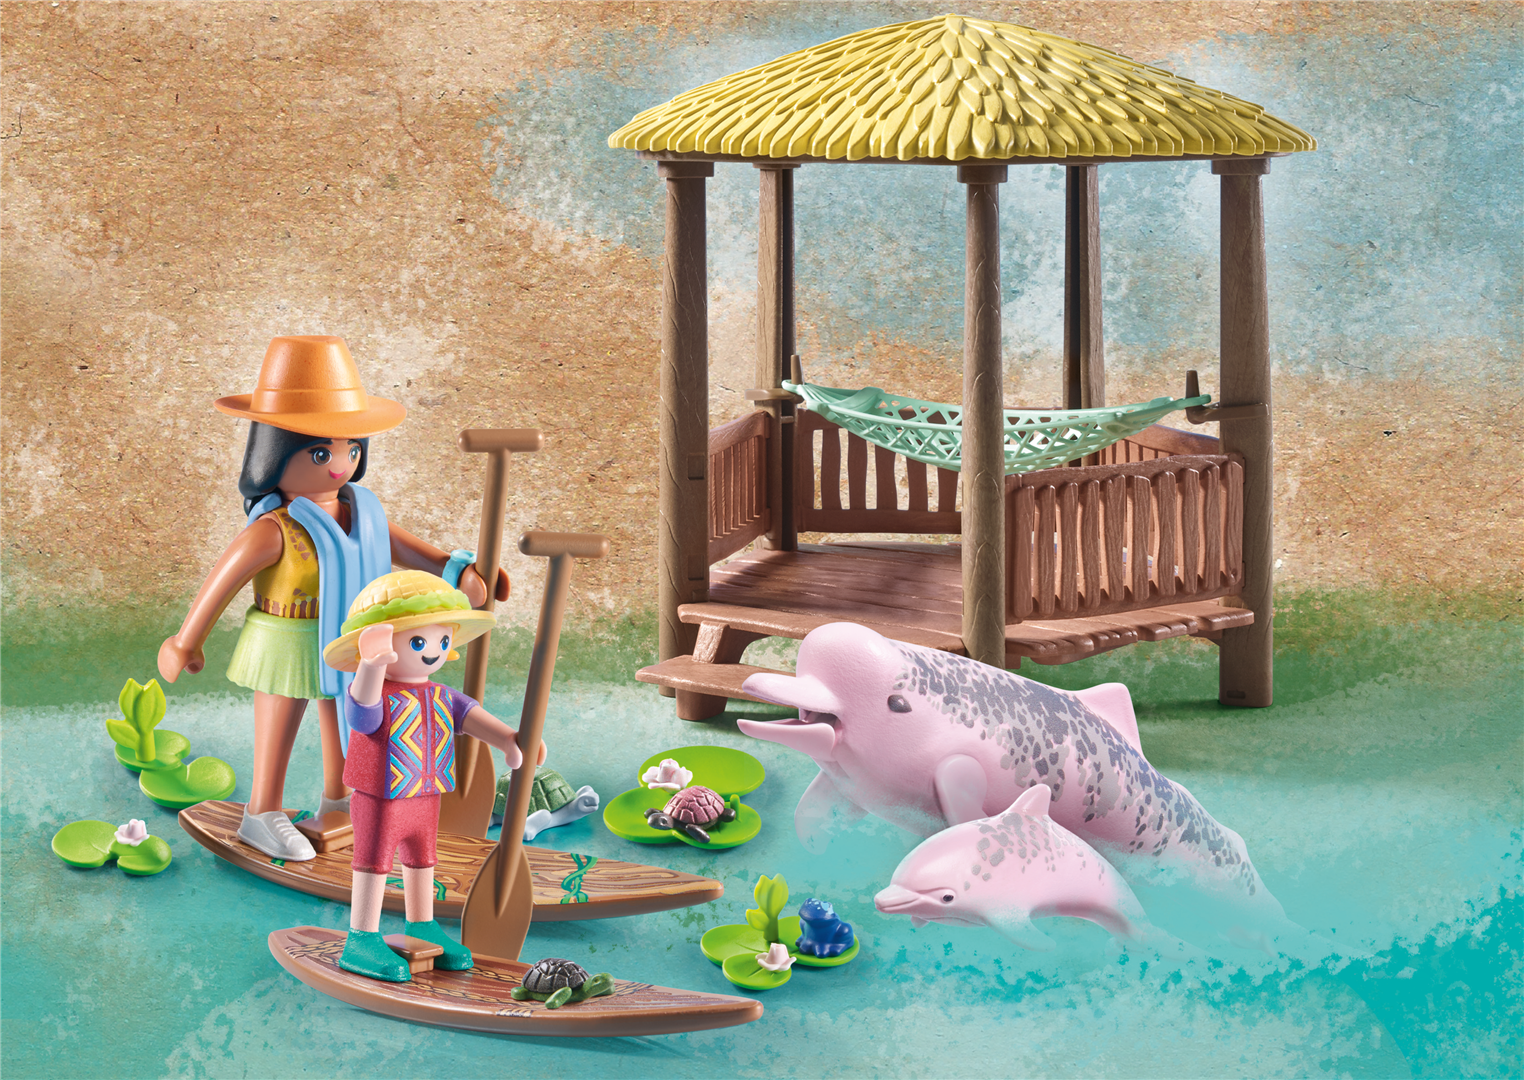 Playmobil wiltopia 71143, escursione tra i delfini di fiume dai 4 anni in su - Playmobil